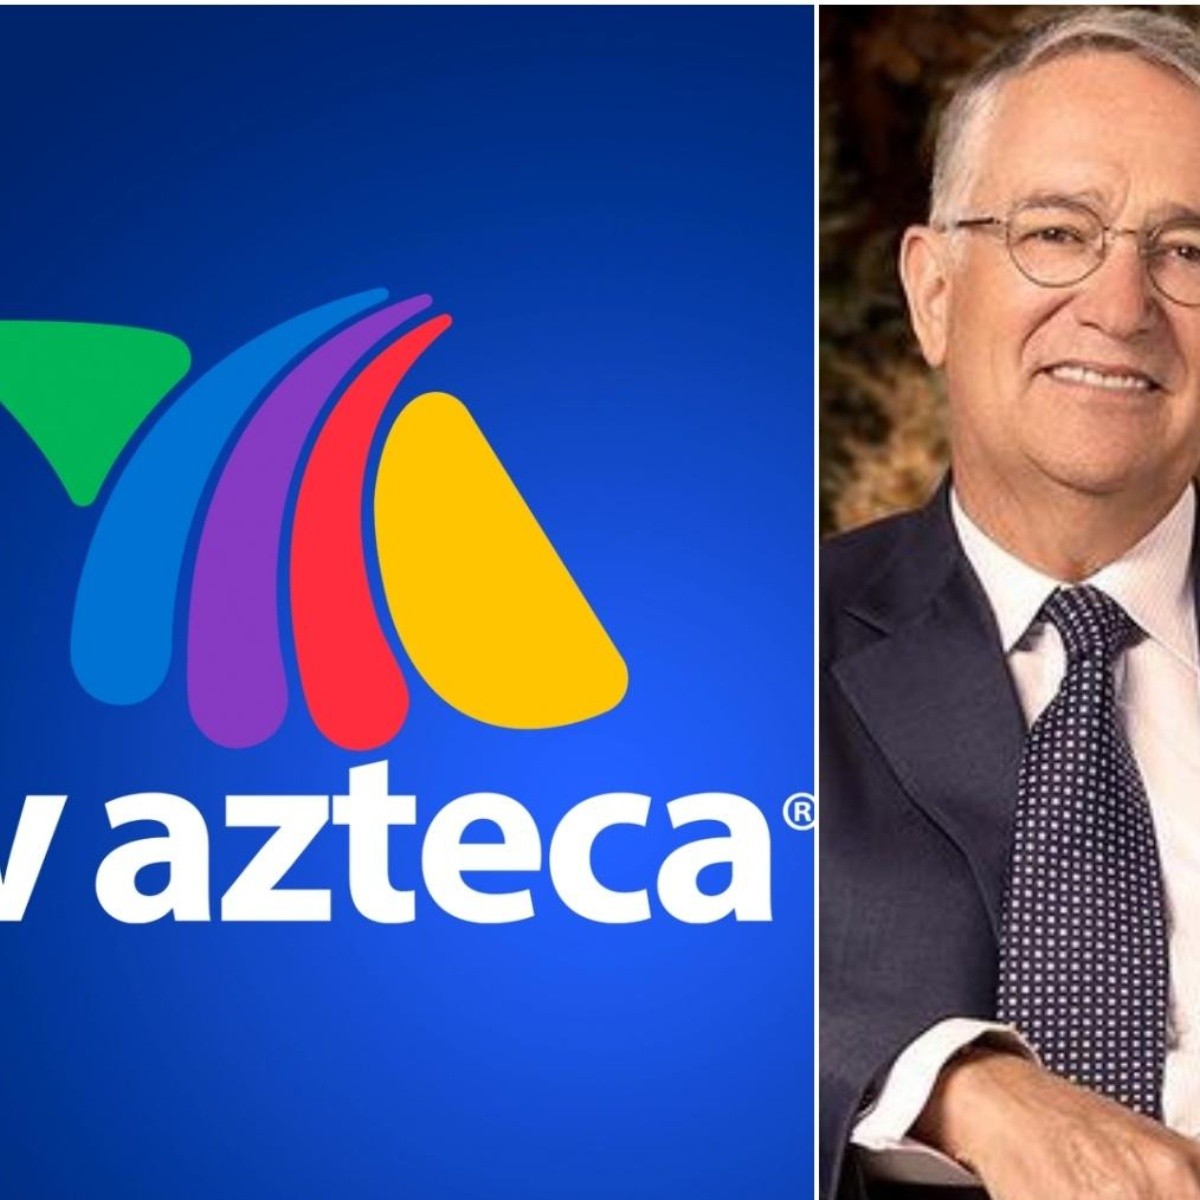 tv azteca prepara arma secreta en contra de la competencia para recuperar audiencia